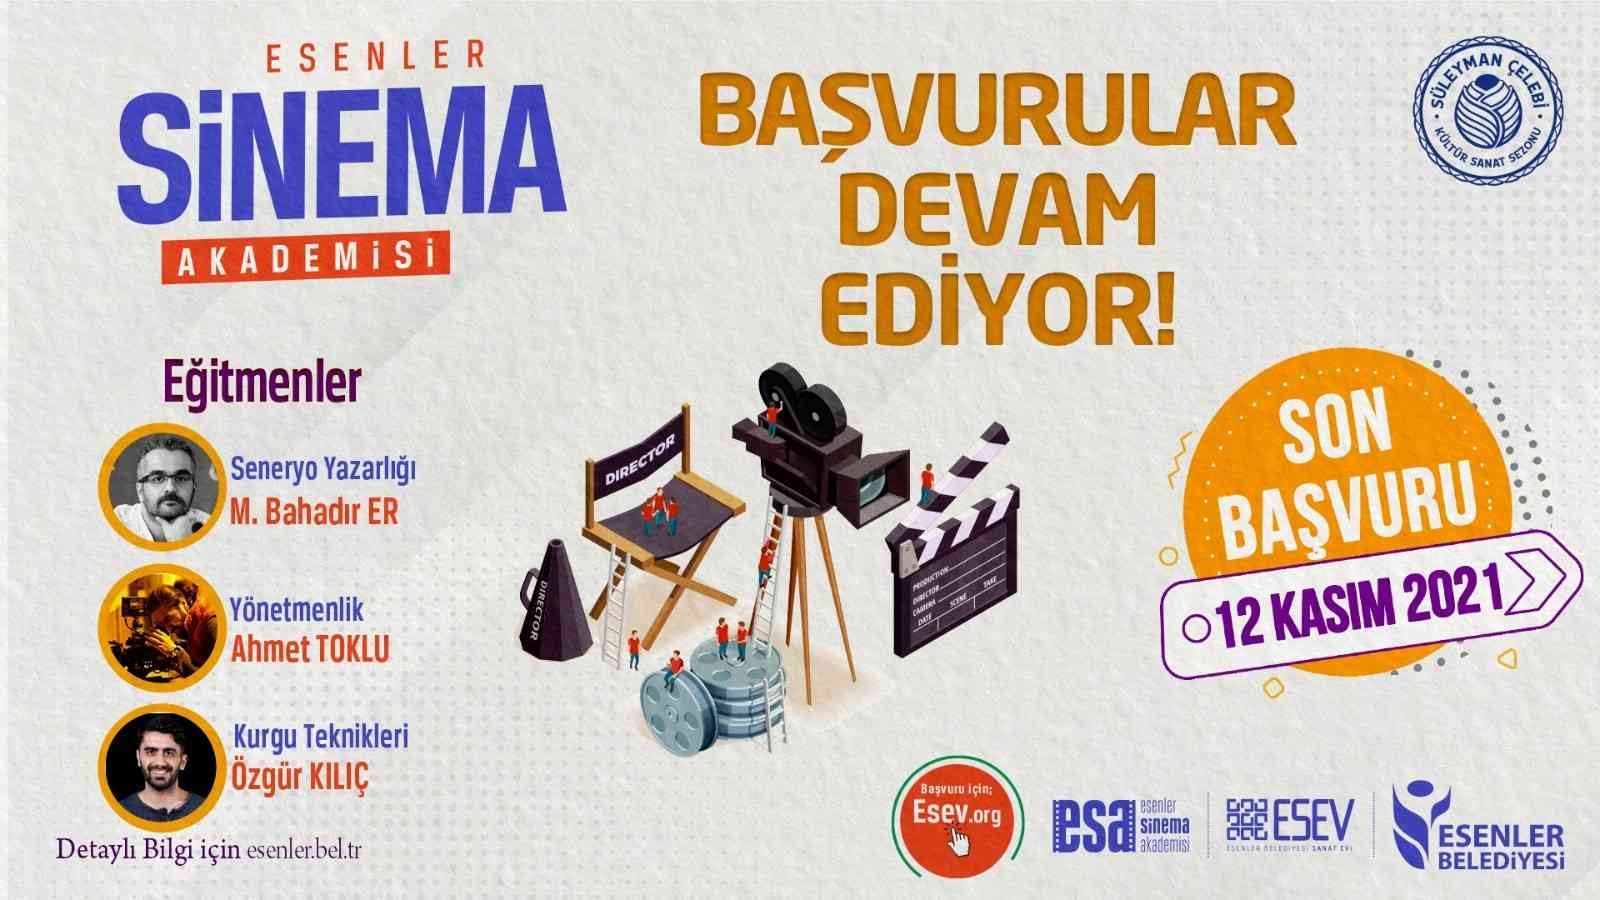 Esenler Sinema Akademisi başvuruları devam ediyor #istanbul